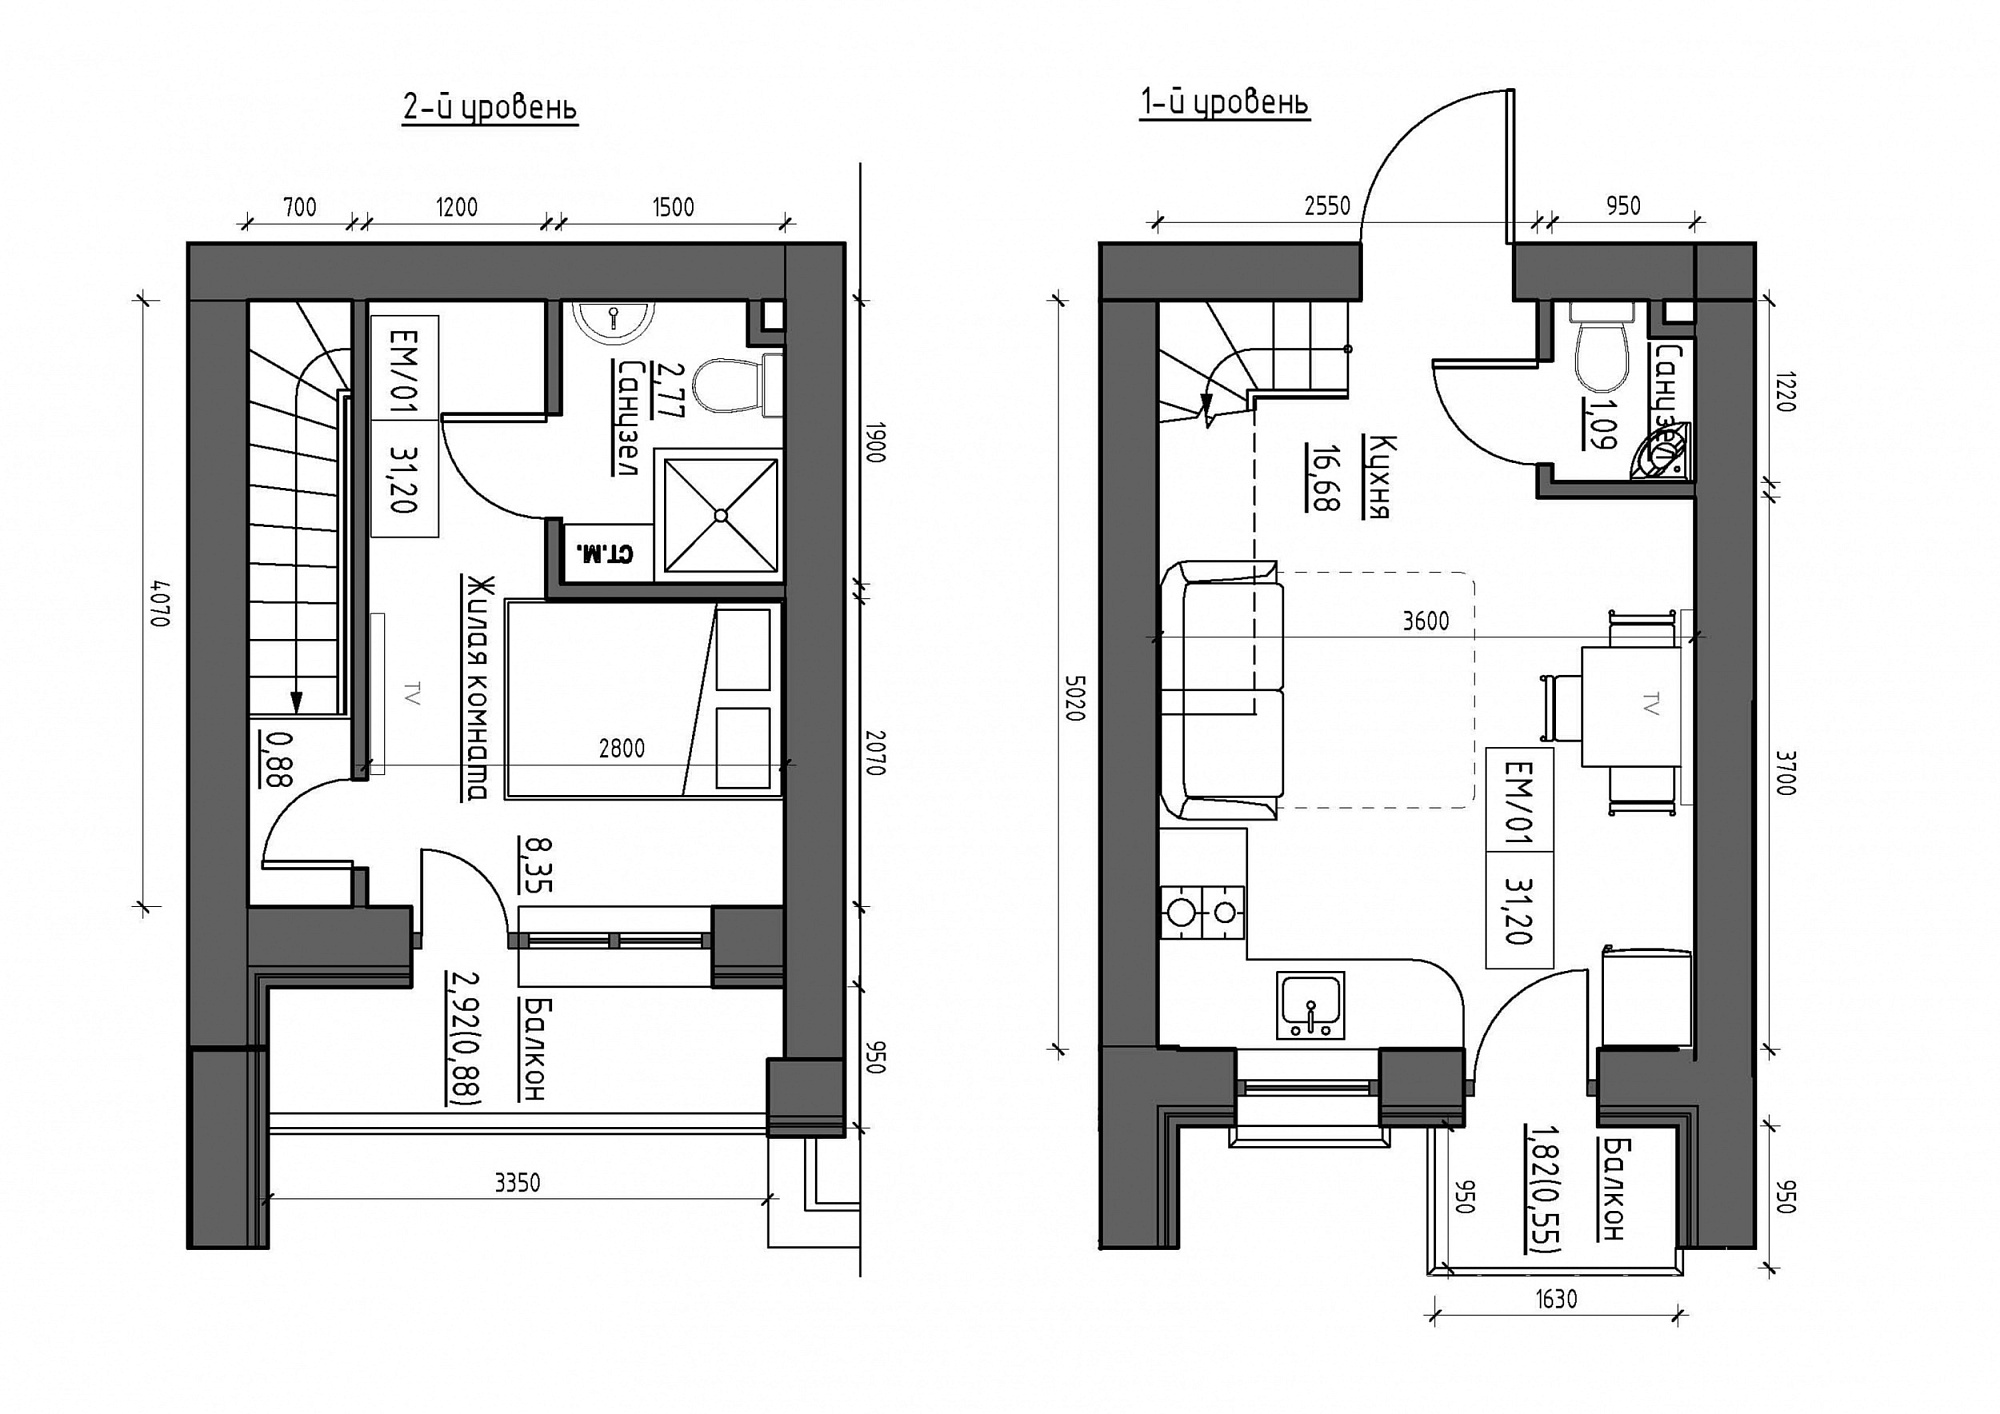 Planning 2-lvl flats area 31.2m2, KS-011-05/0006.